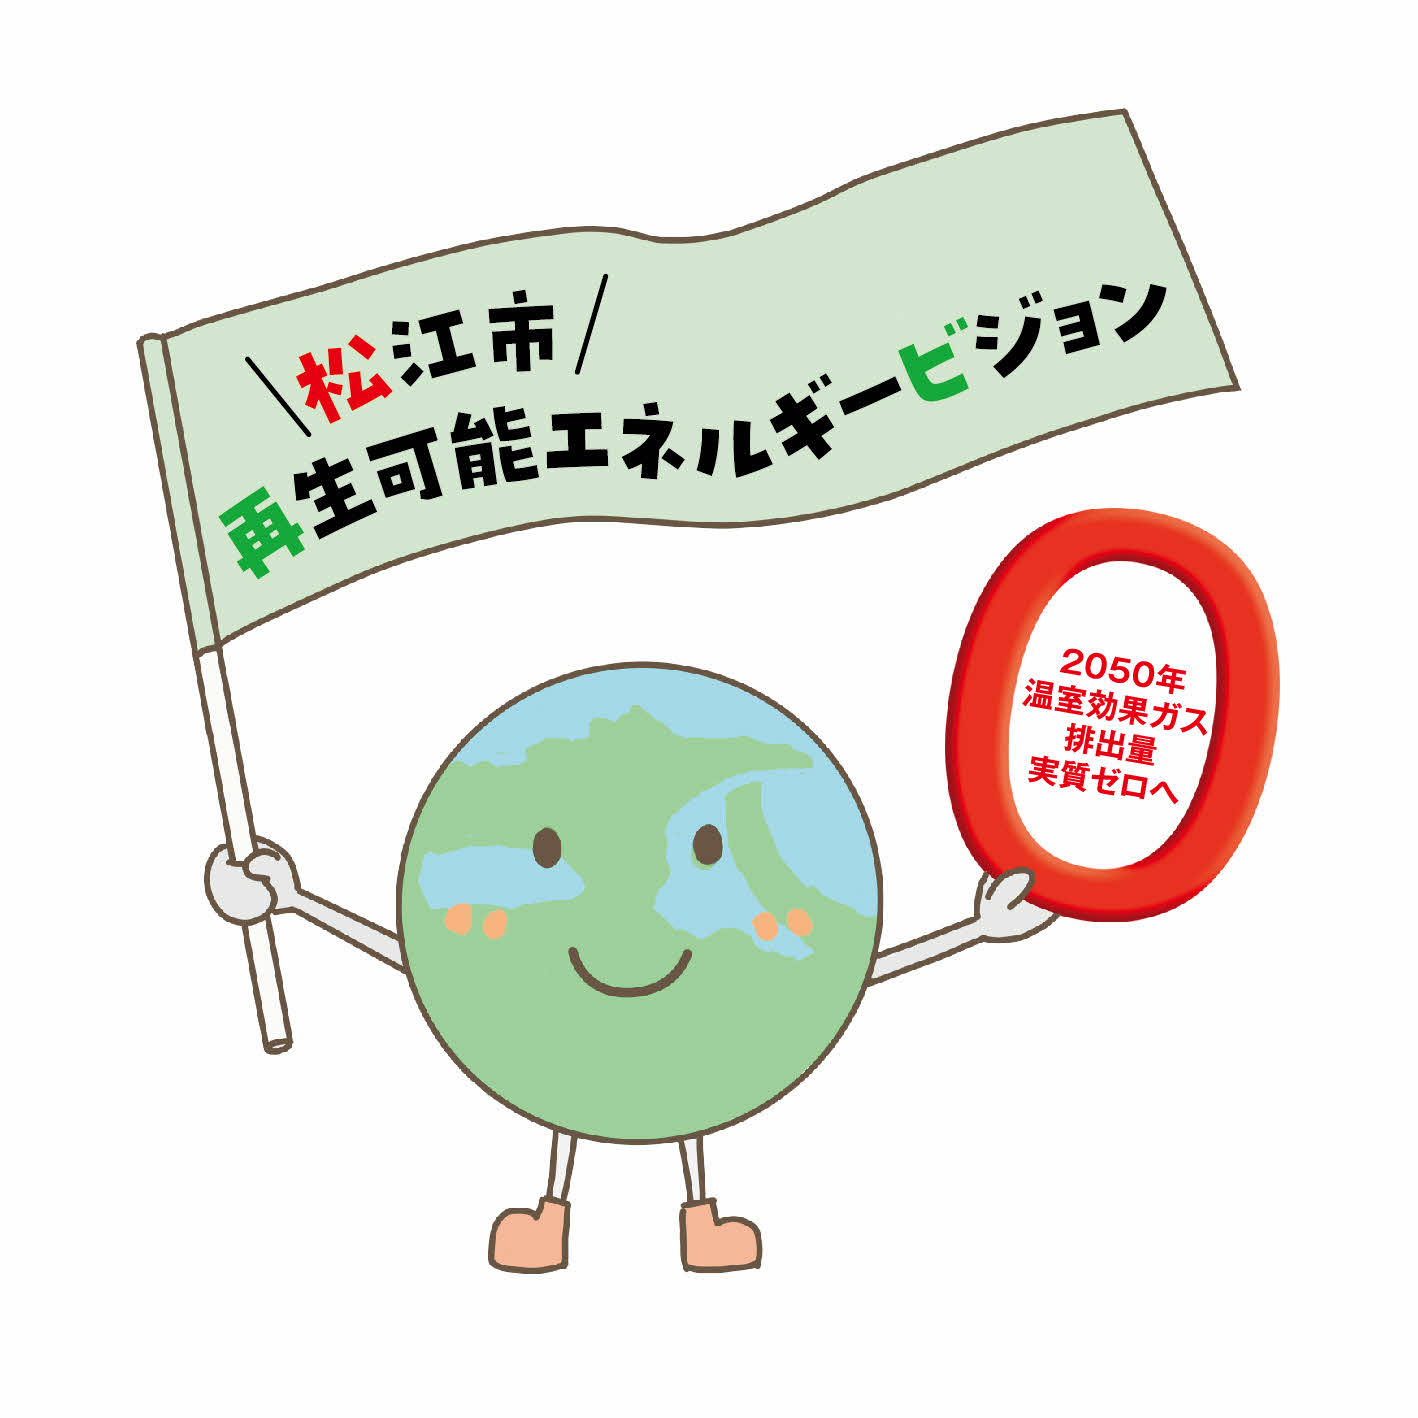 松江市再生可能エネルギービジョンマスコットキャラクター「ゼロタン」